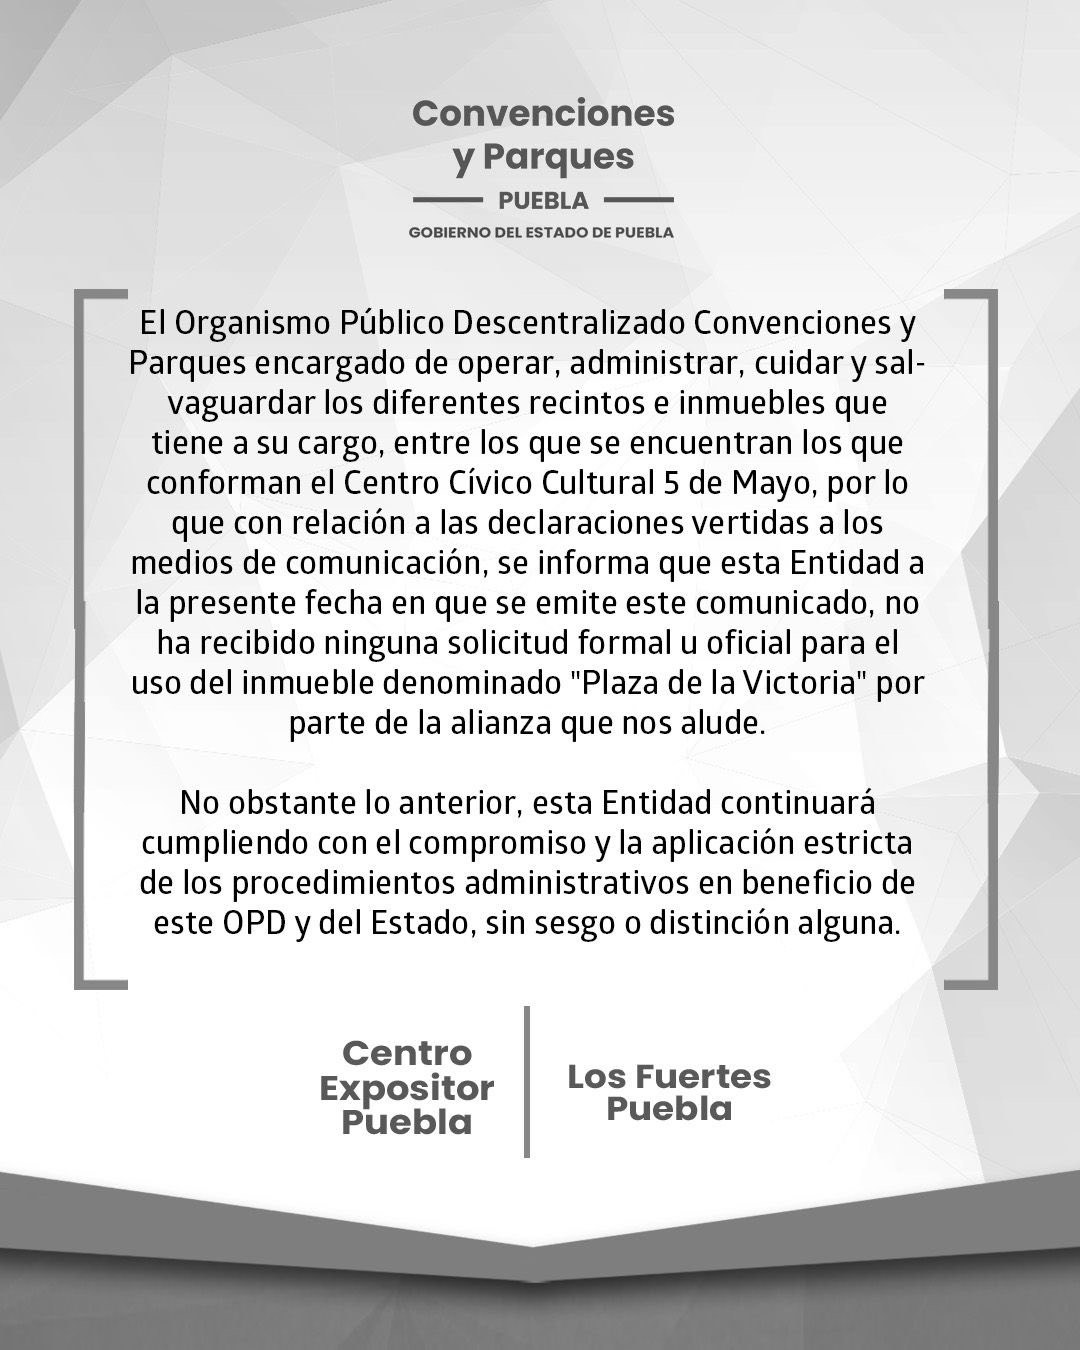 Convenciones y Parques desmiente que campaña de Lalo Rivera haya solicitado usar la plaza de la Victoria 